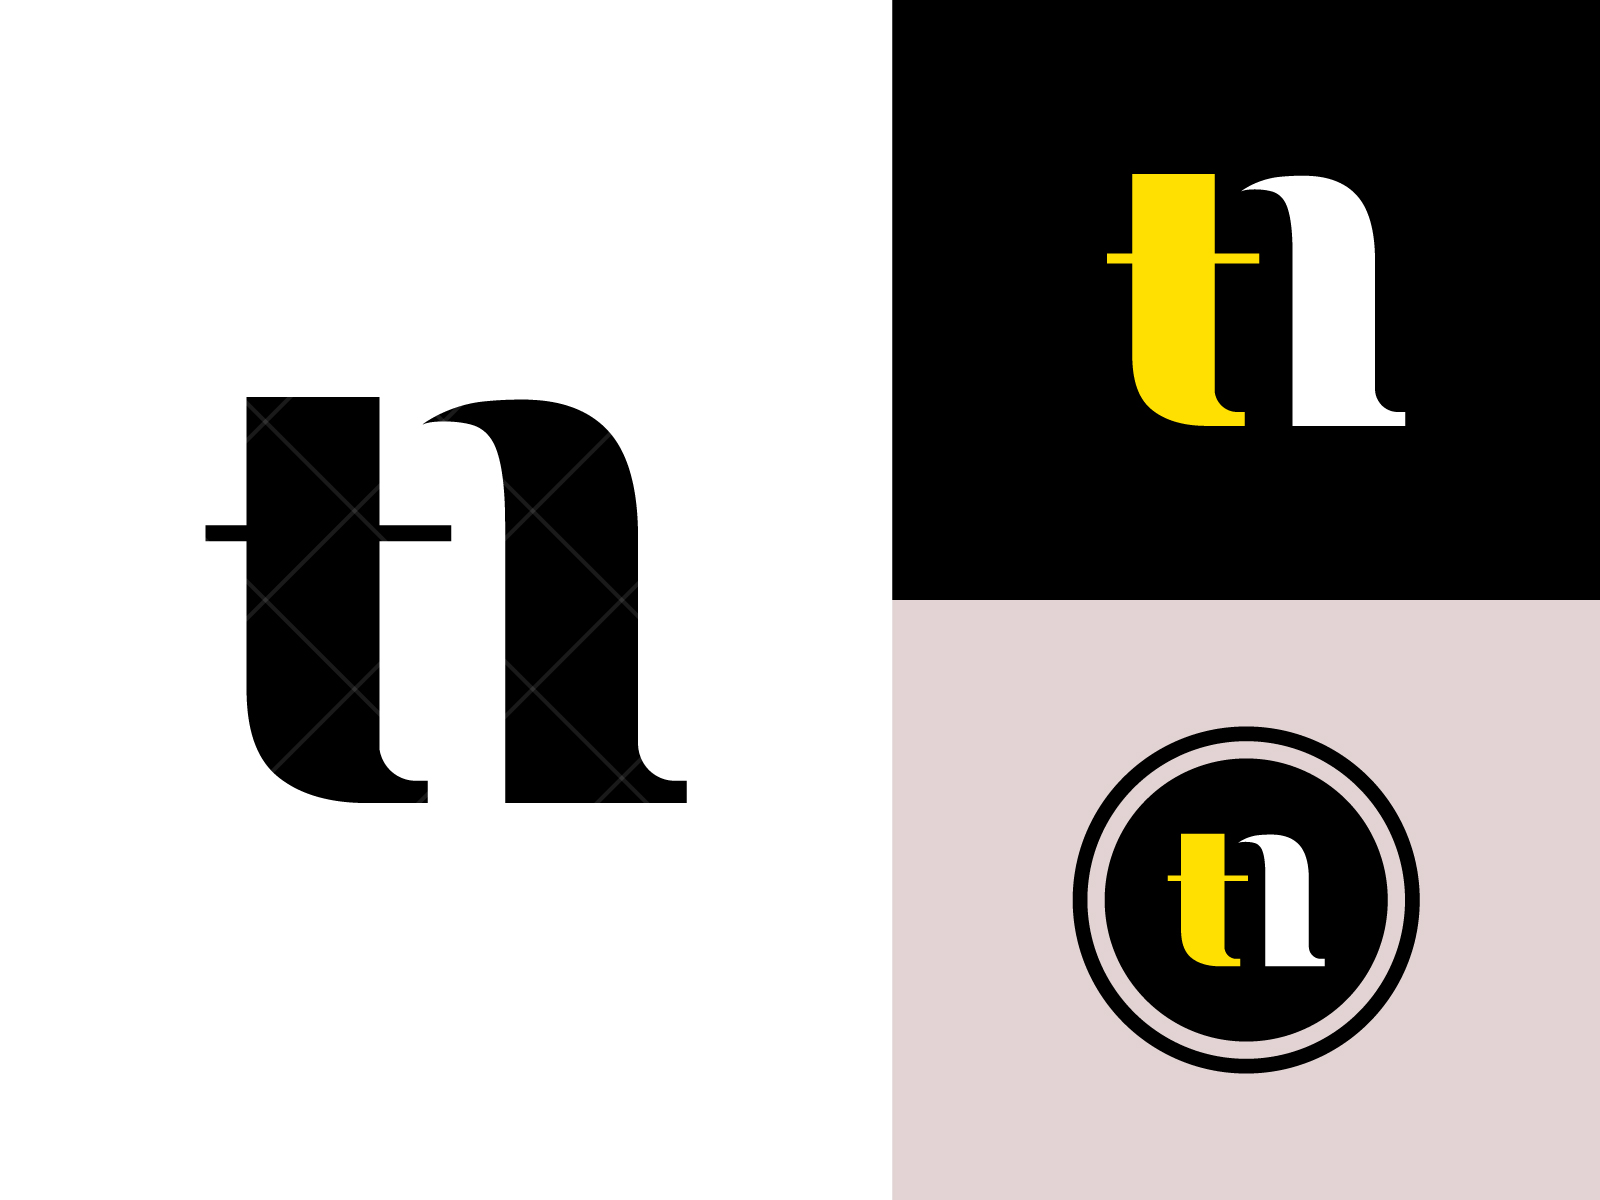 Thiết kế logo lĩnh vực kỹ thuật, công nghệ #nurodesign #logodesign #th... |  TikTok